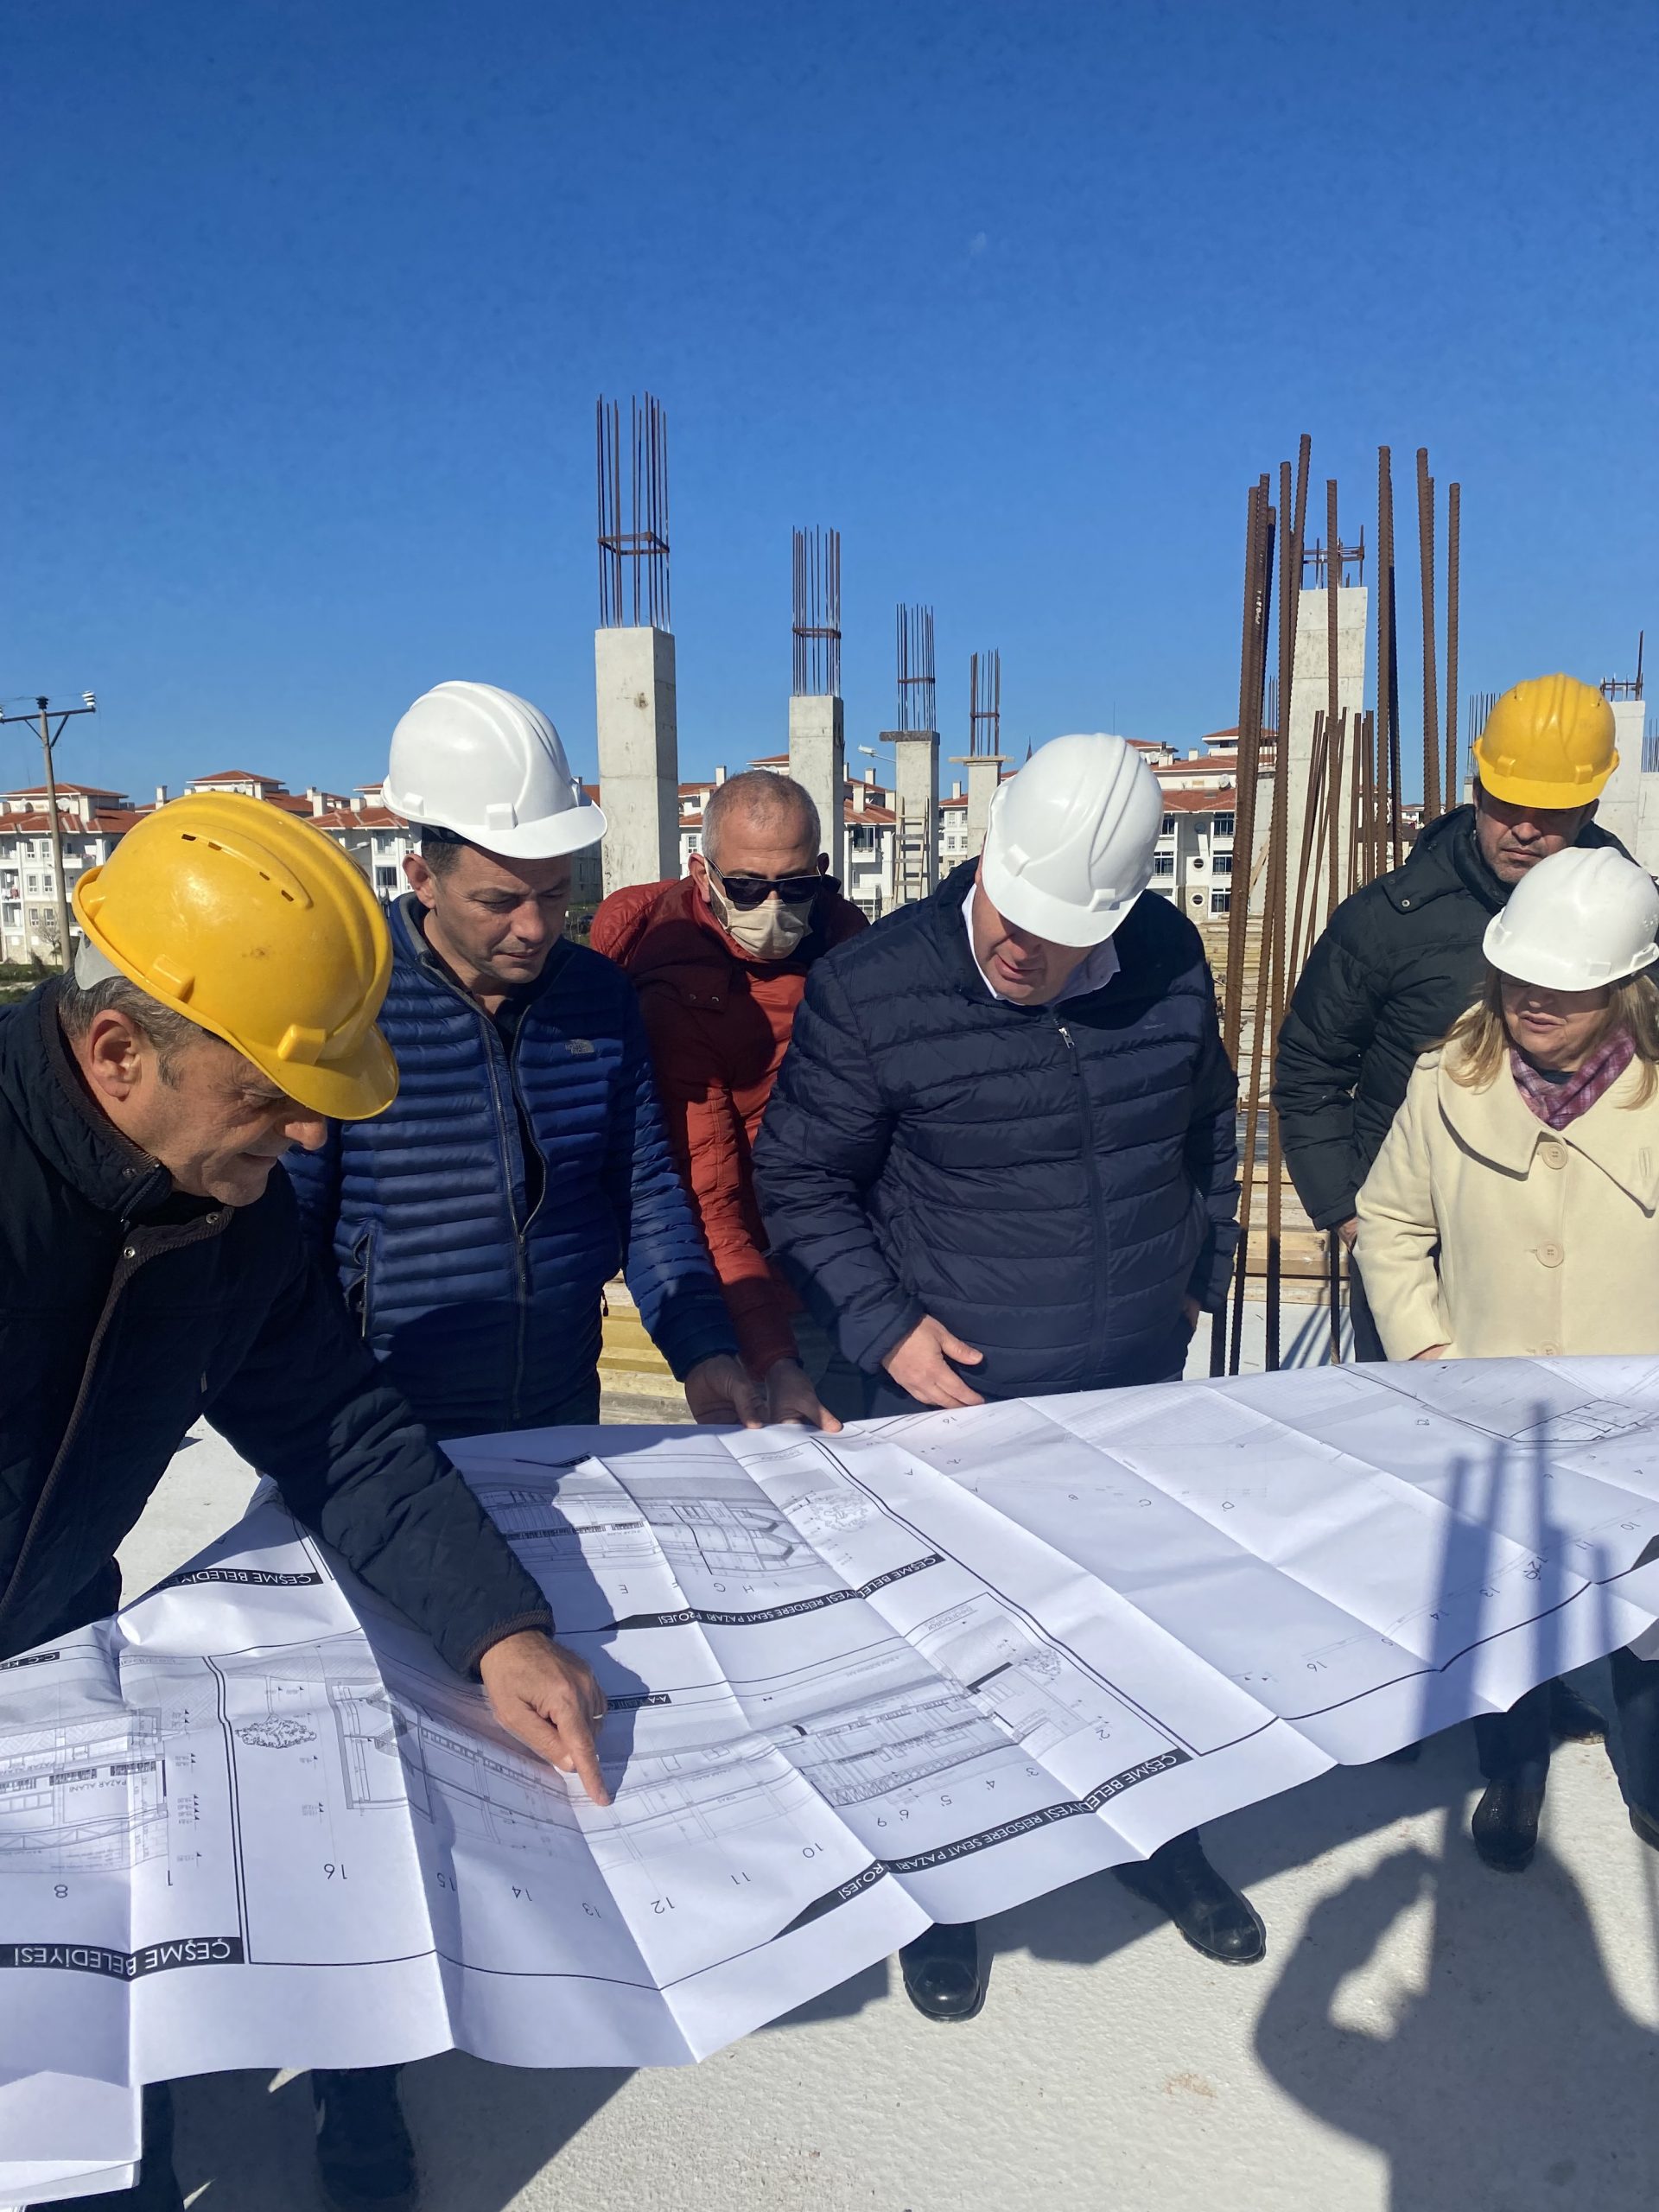 Çeşme’nin ilk kapalı Pazar yeri   inşaatı Reisdere’de devam ediyor